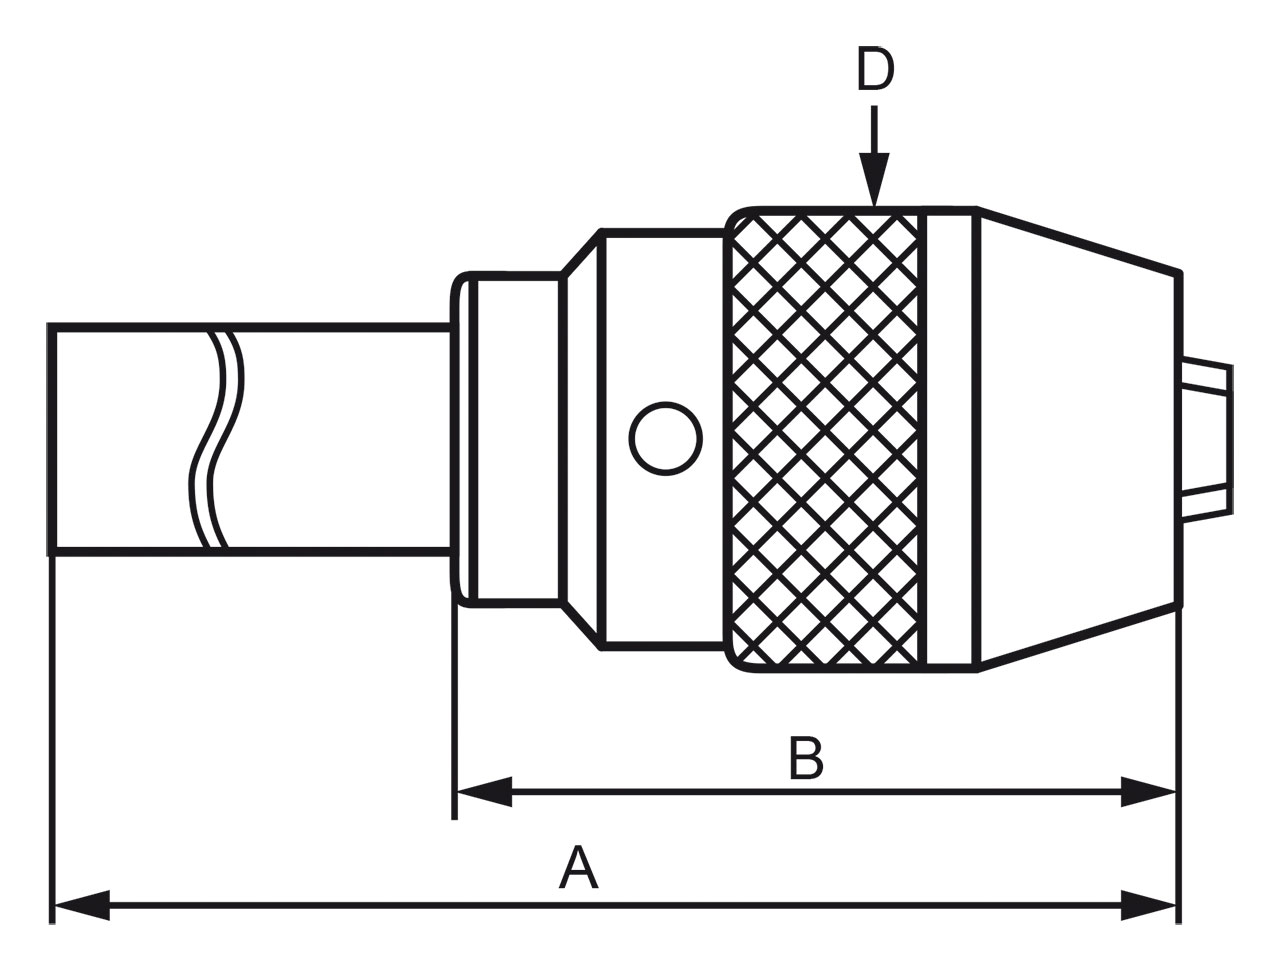 Schnellspann-Bohrfutter mit Direktaufnahme MK 3 / 1 - 16 mm